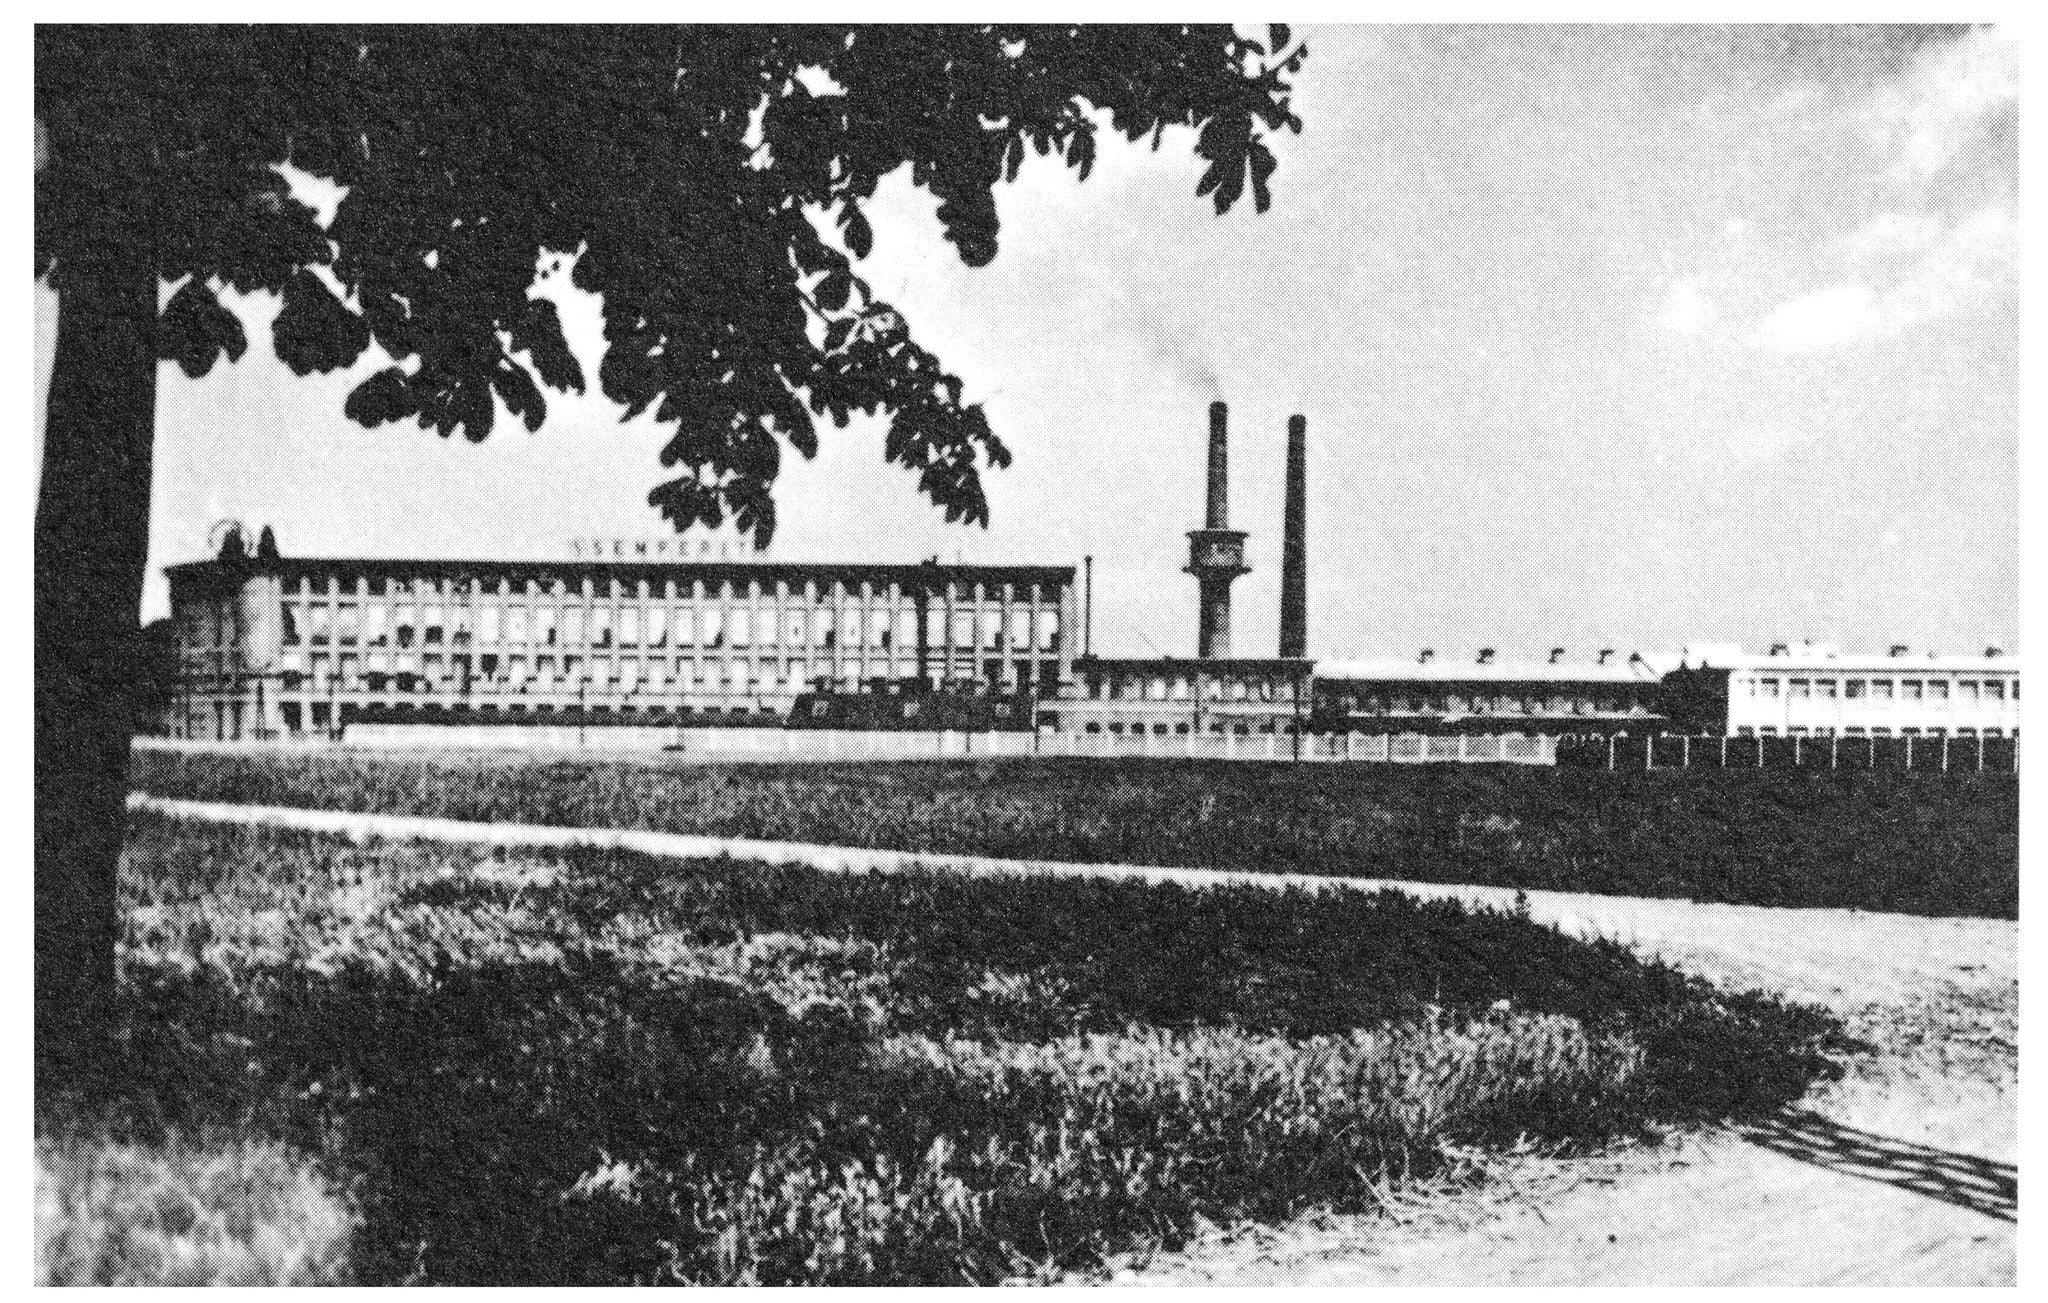 Semperit Factory